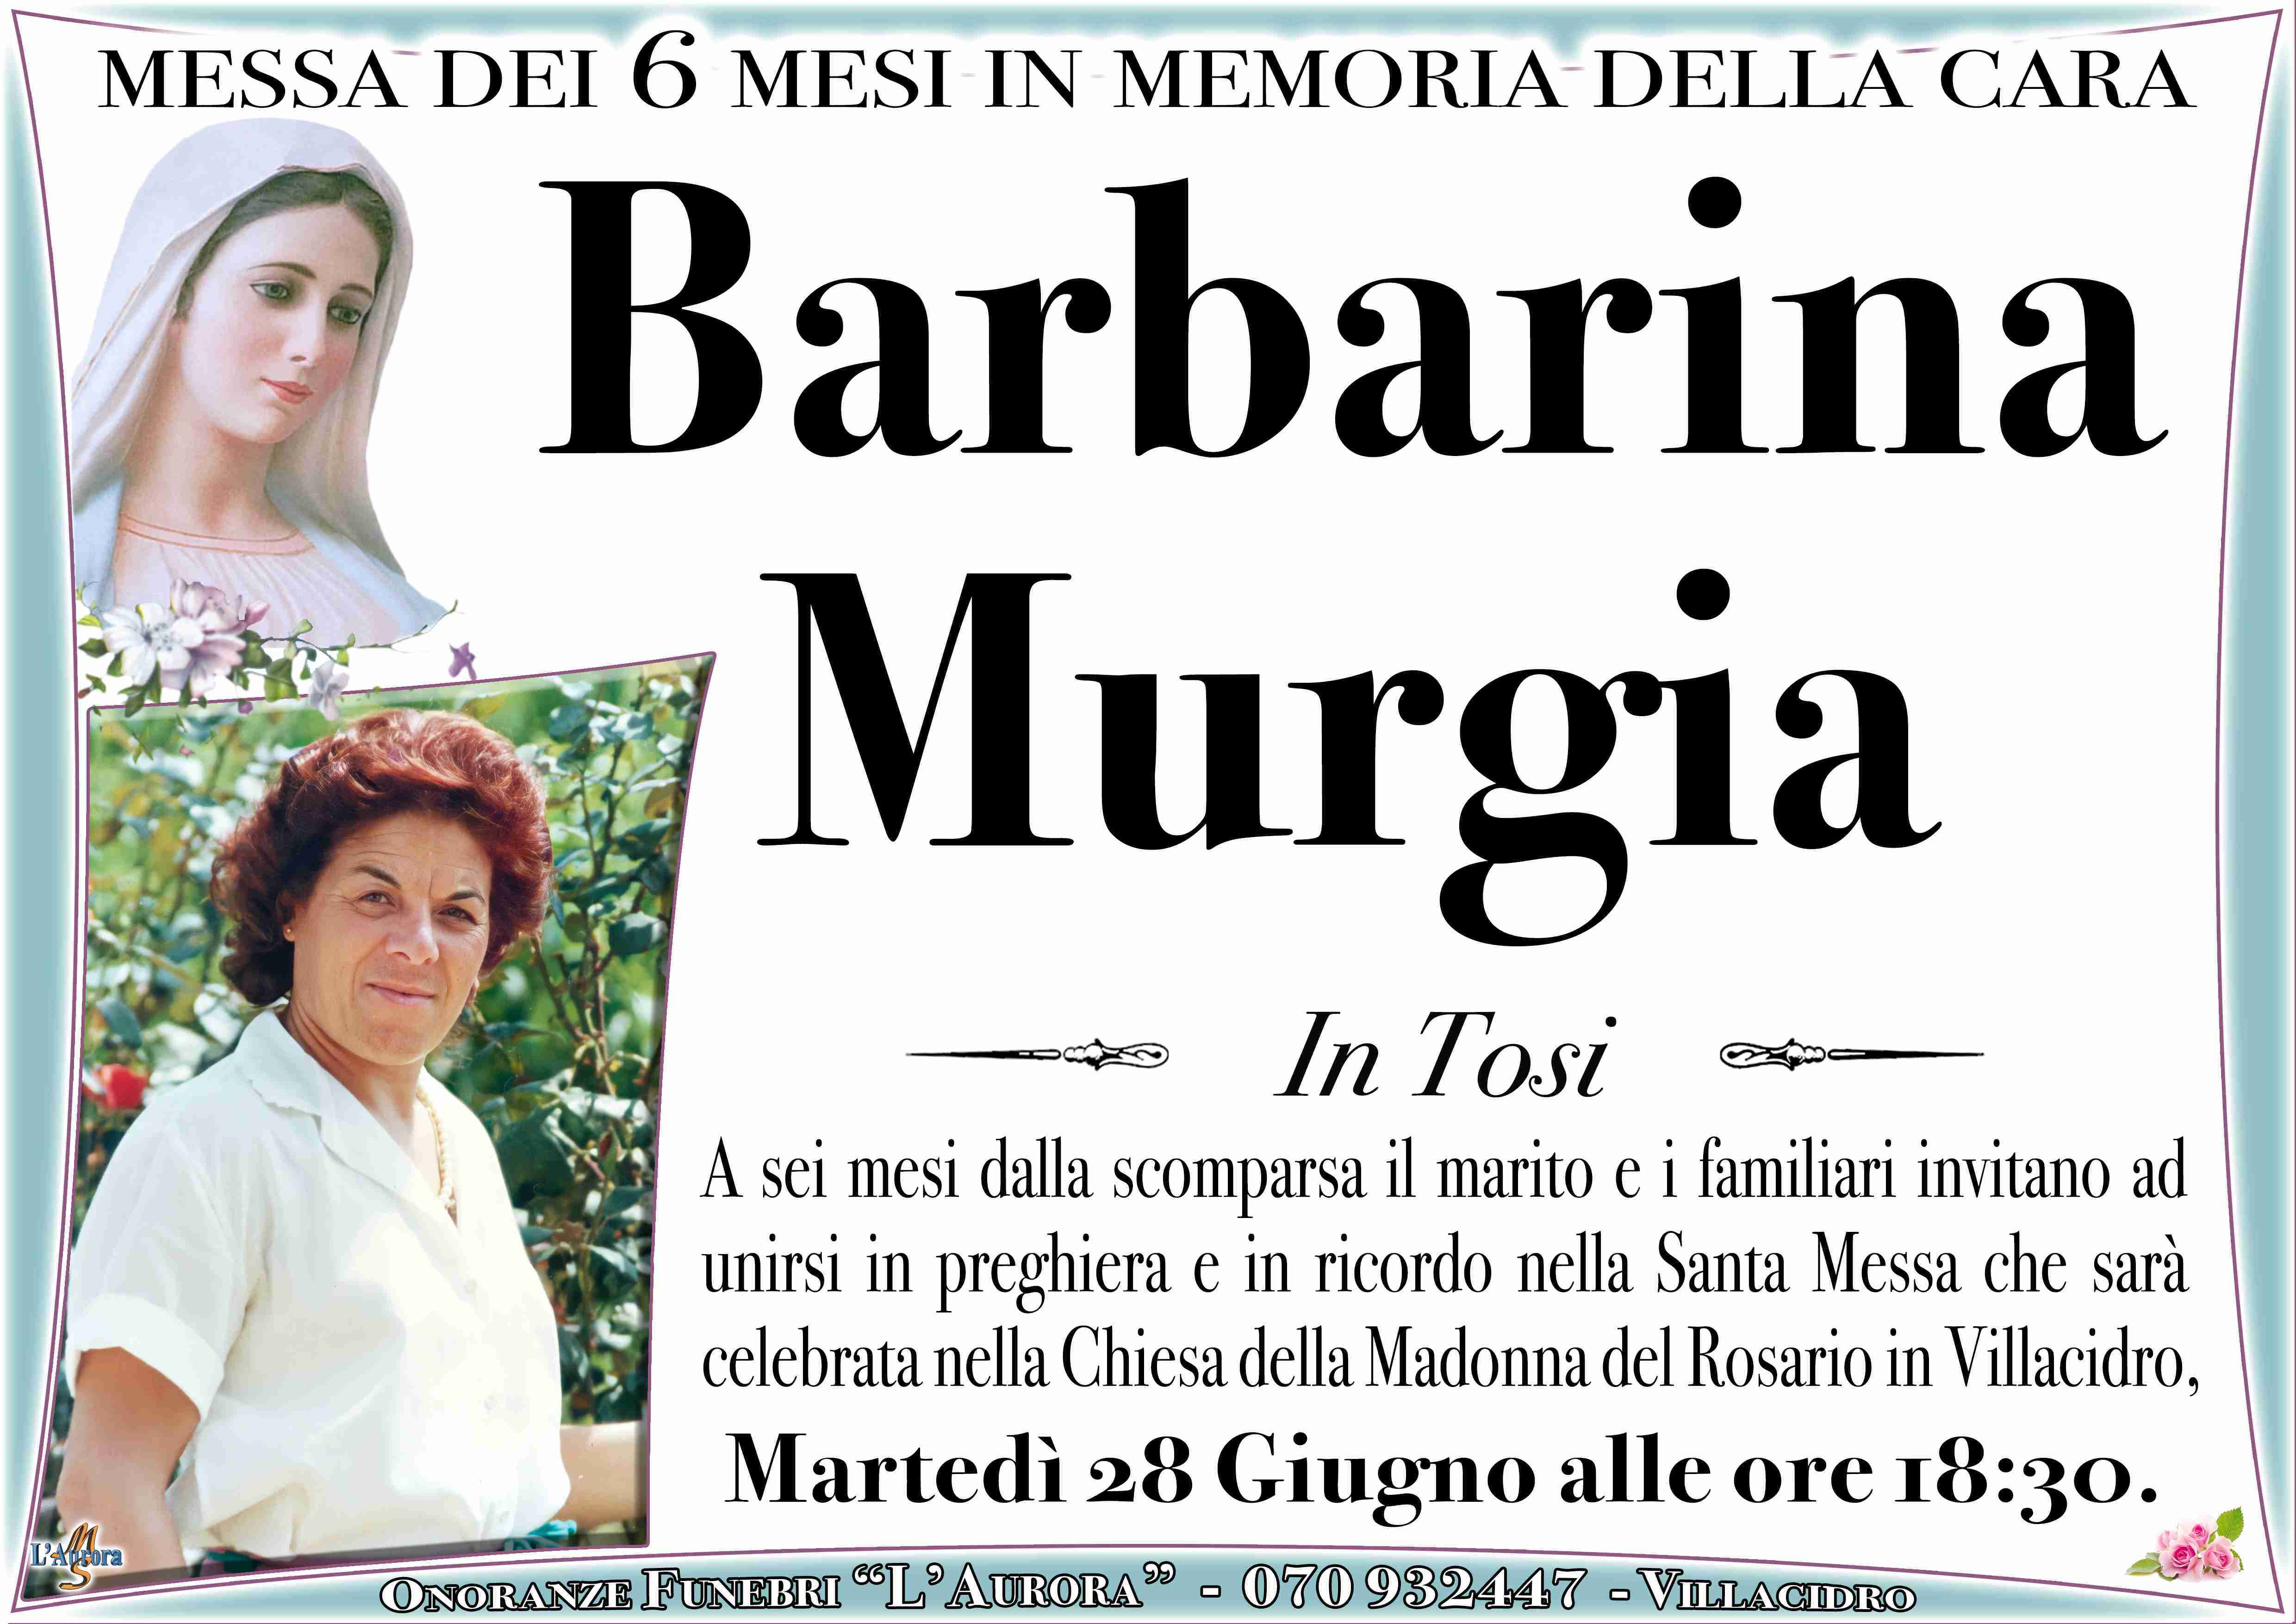 Barbarina Murgia